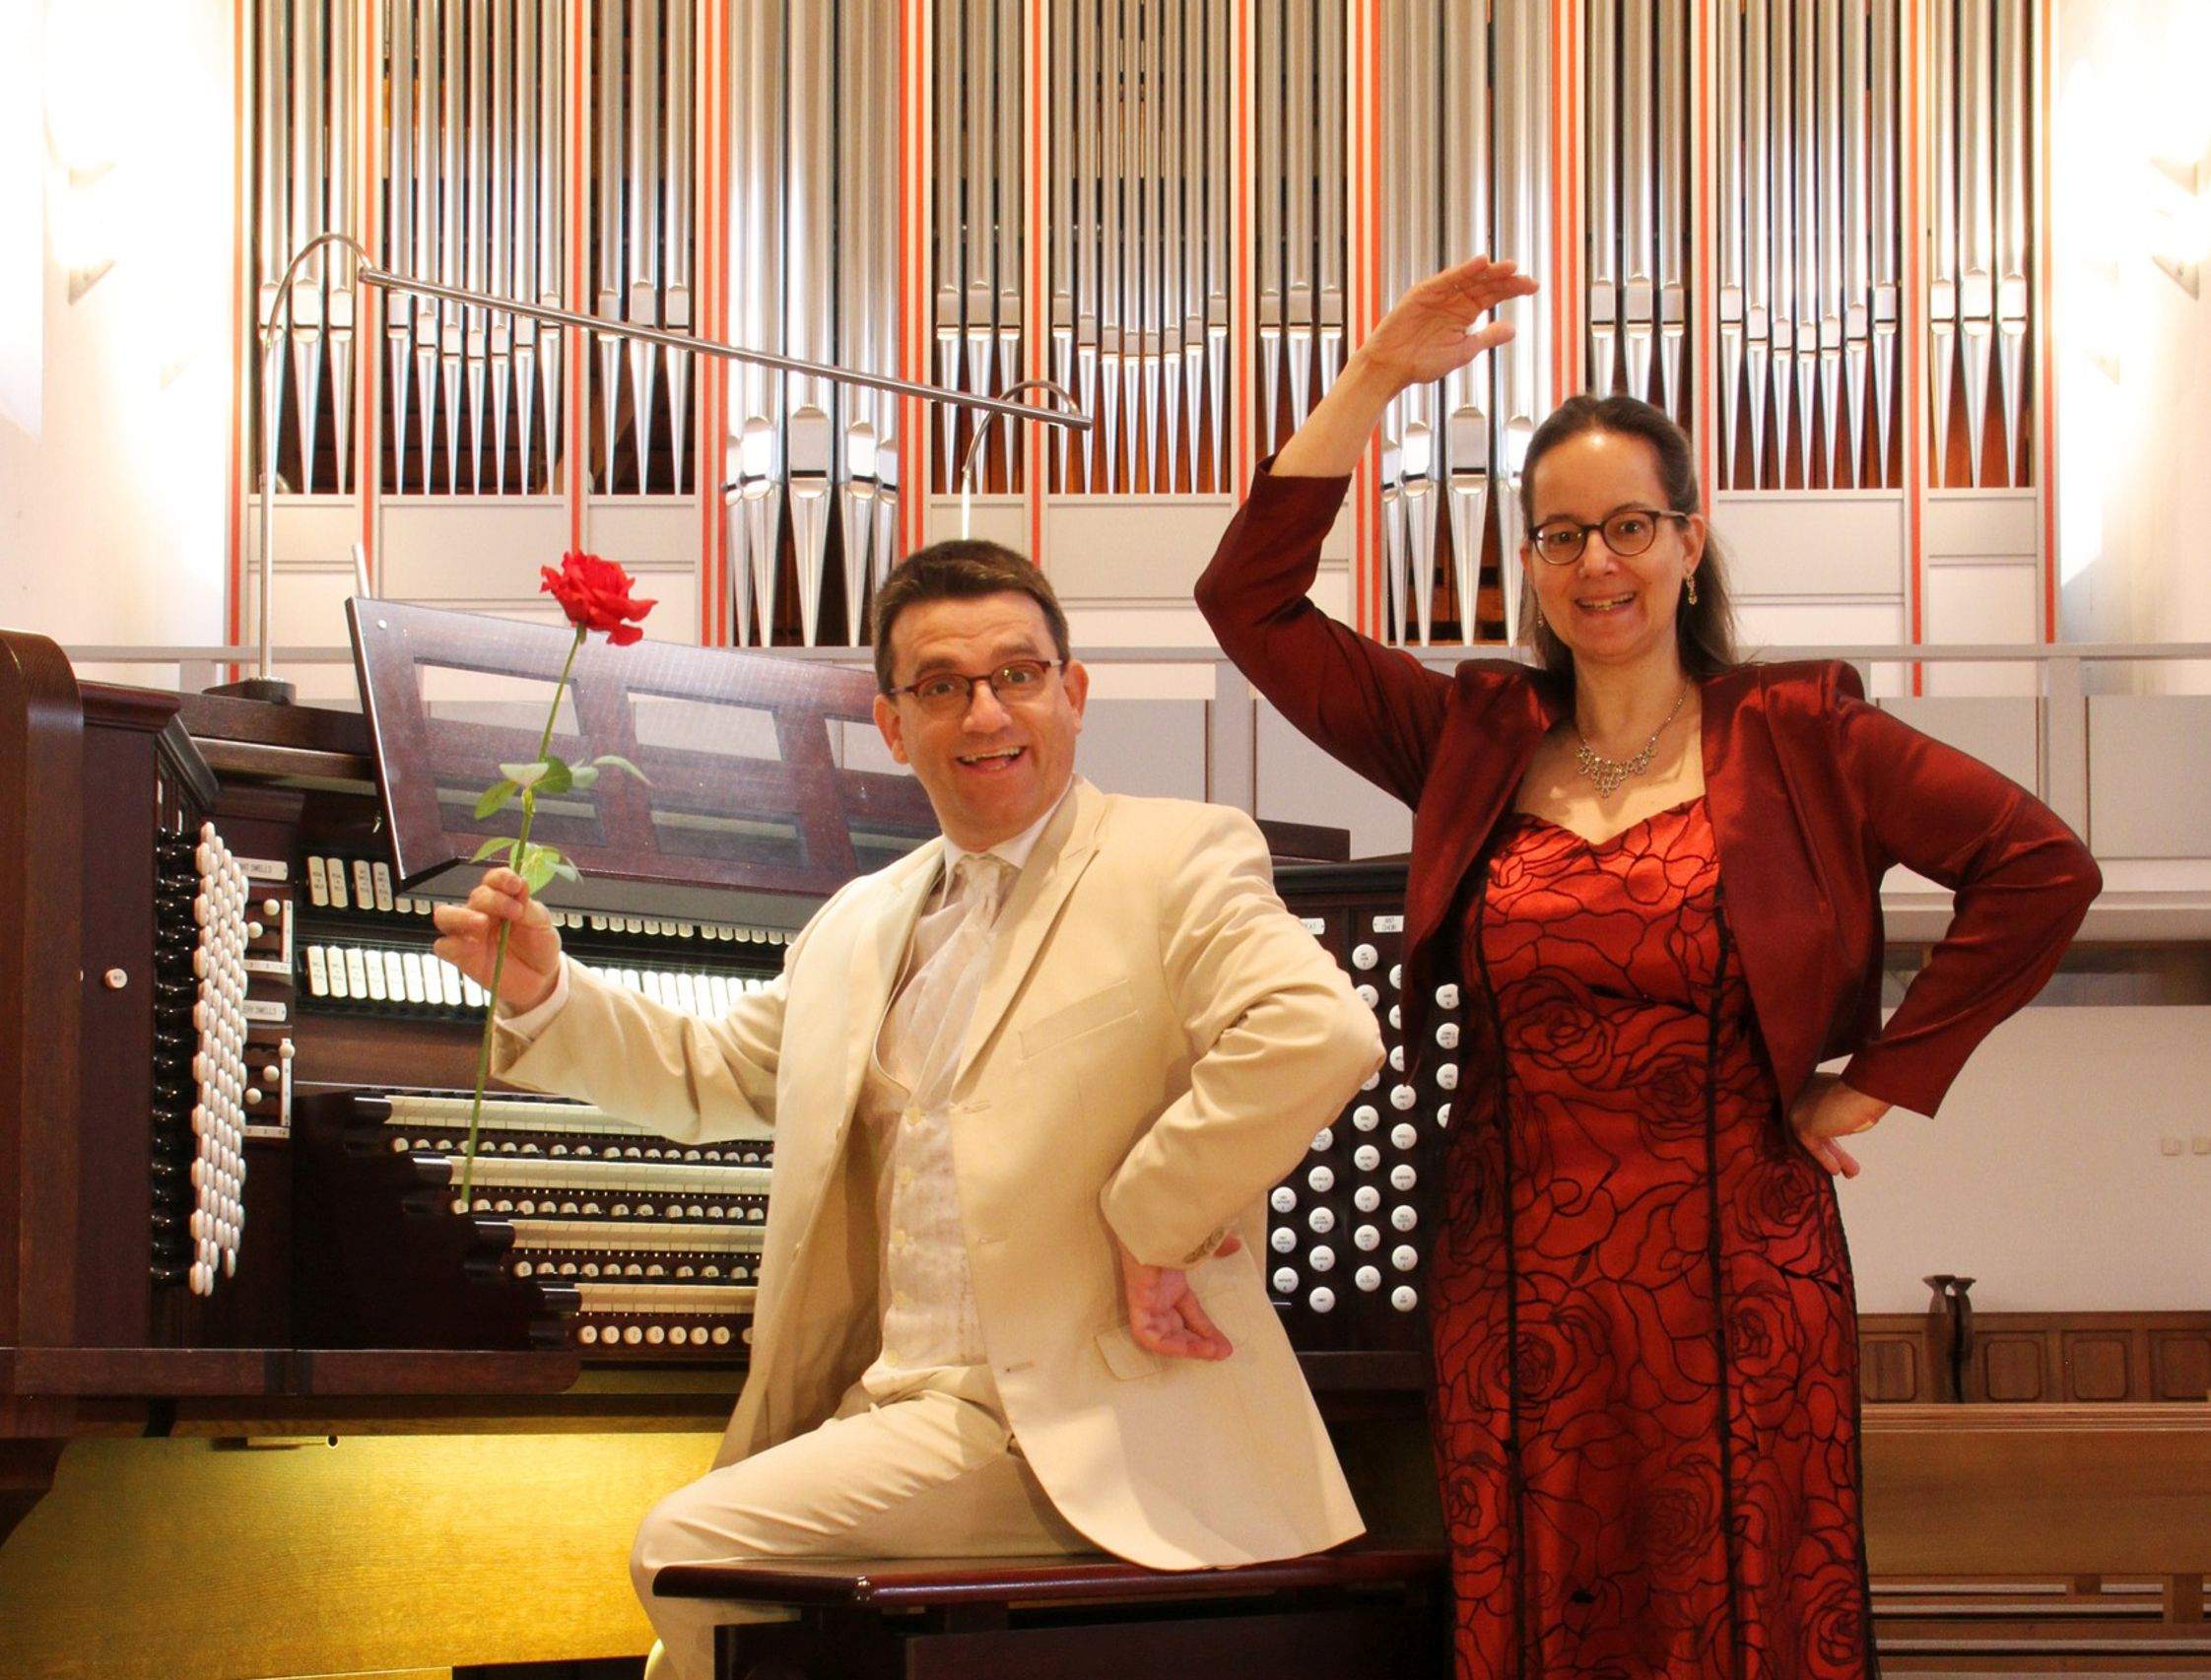 Die Orgel tanzt - Walzer, Tango, Boogie und Co.